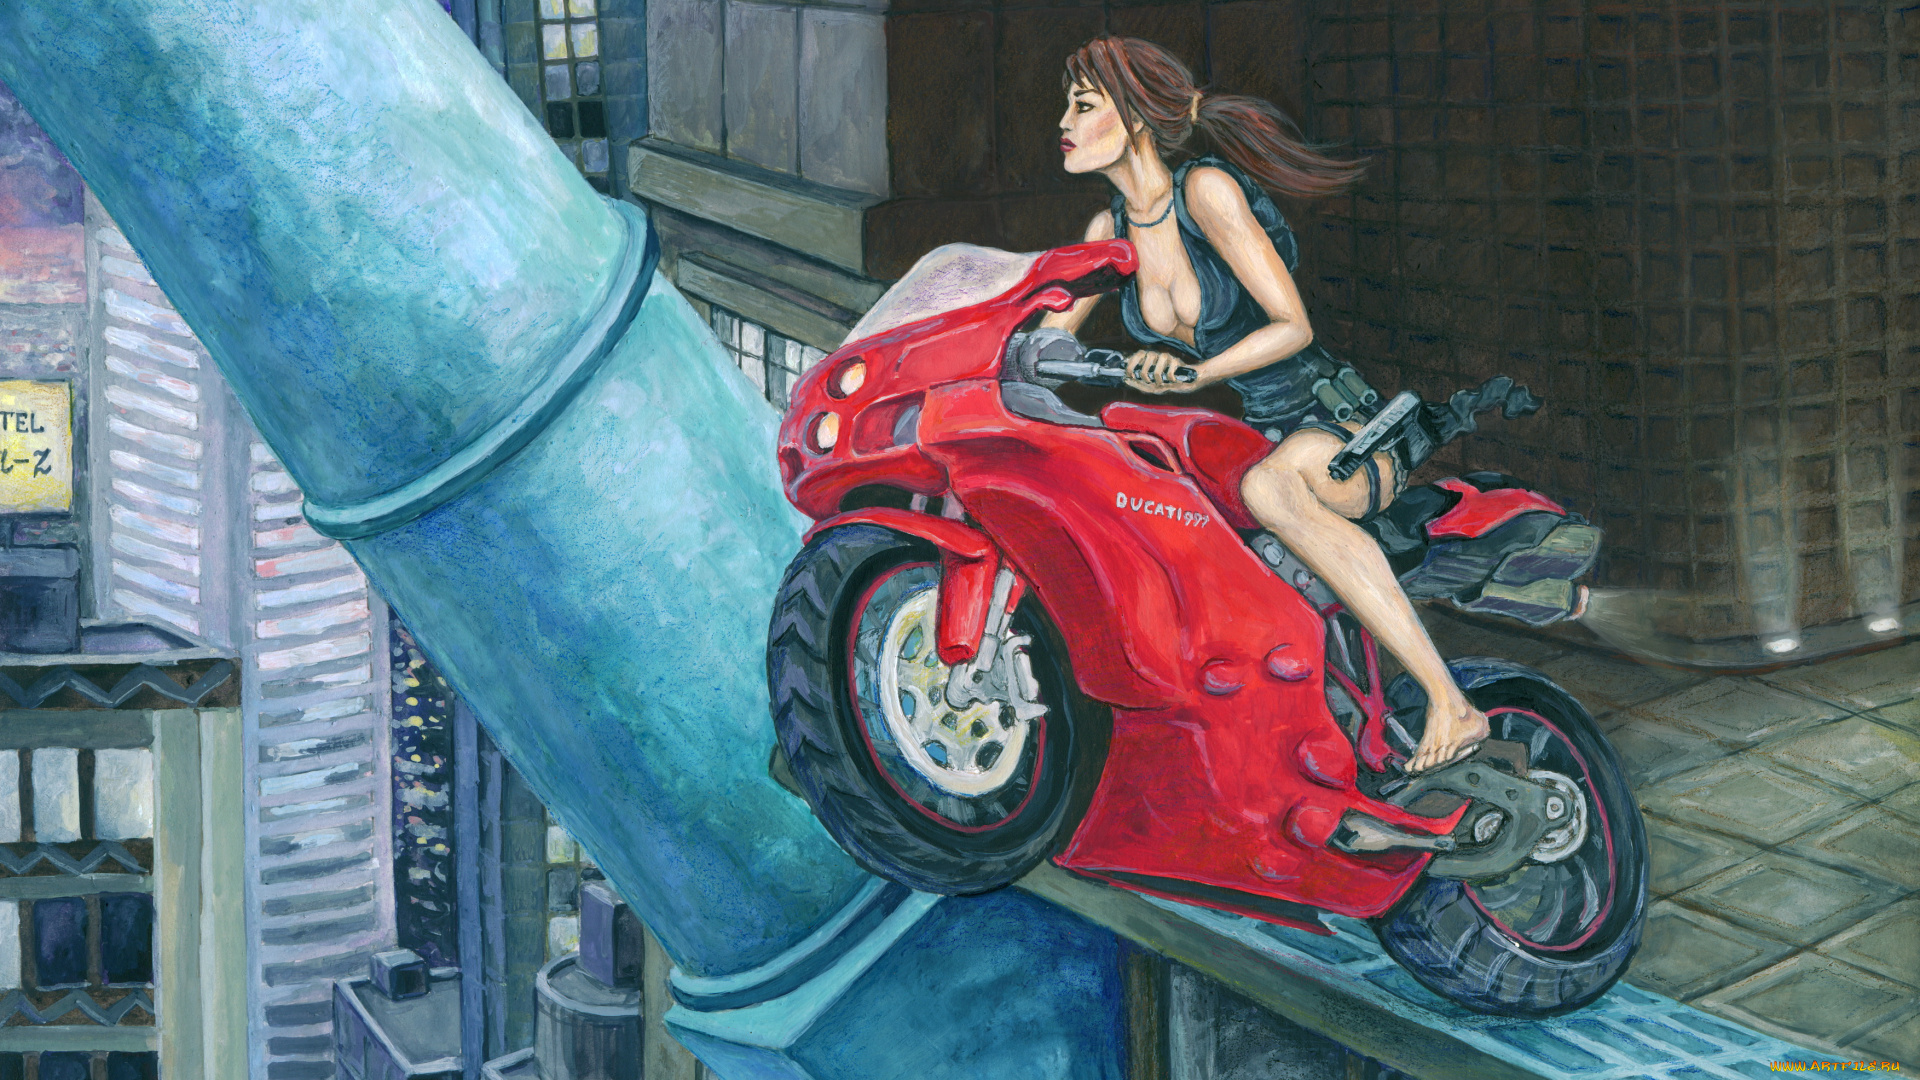 рисованное, комиксы, фон, девушка, город, мотоцикл